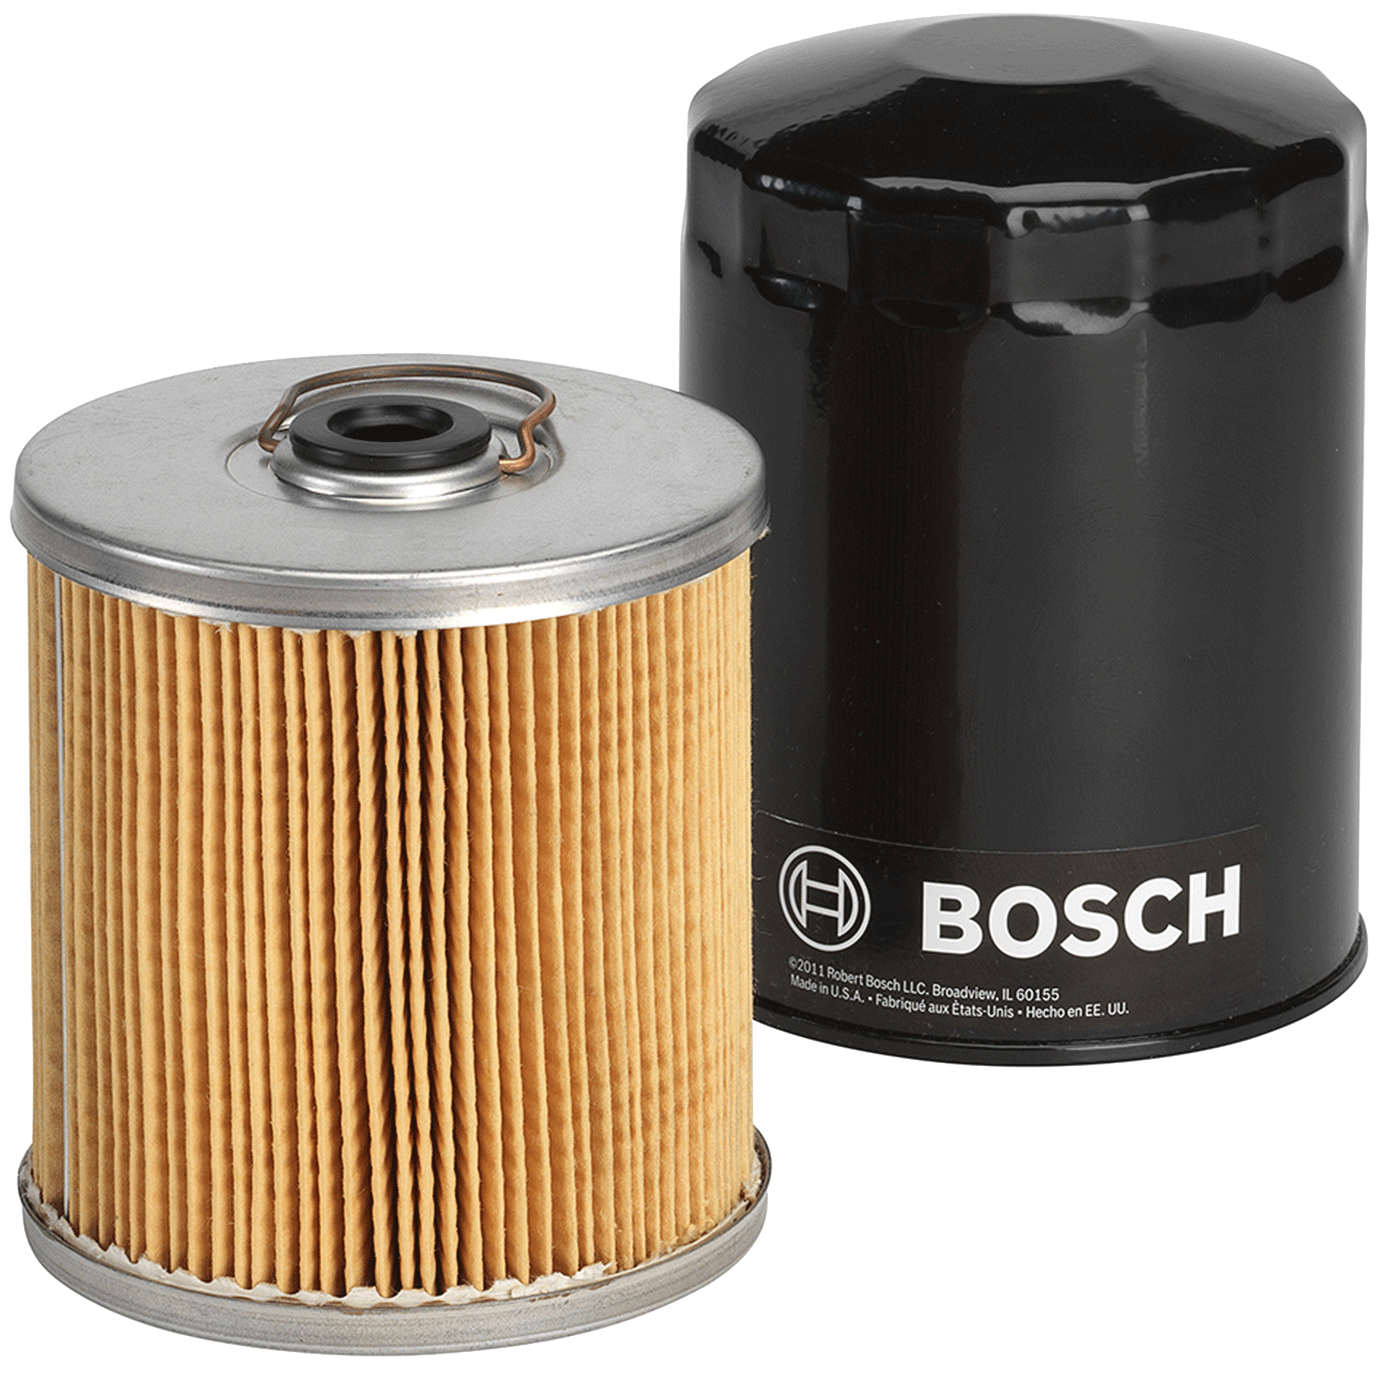 Bosch 12v set horn compact f